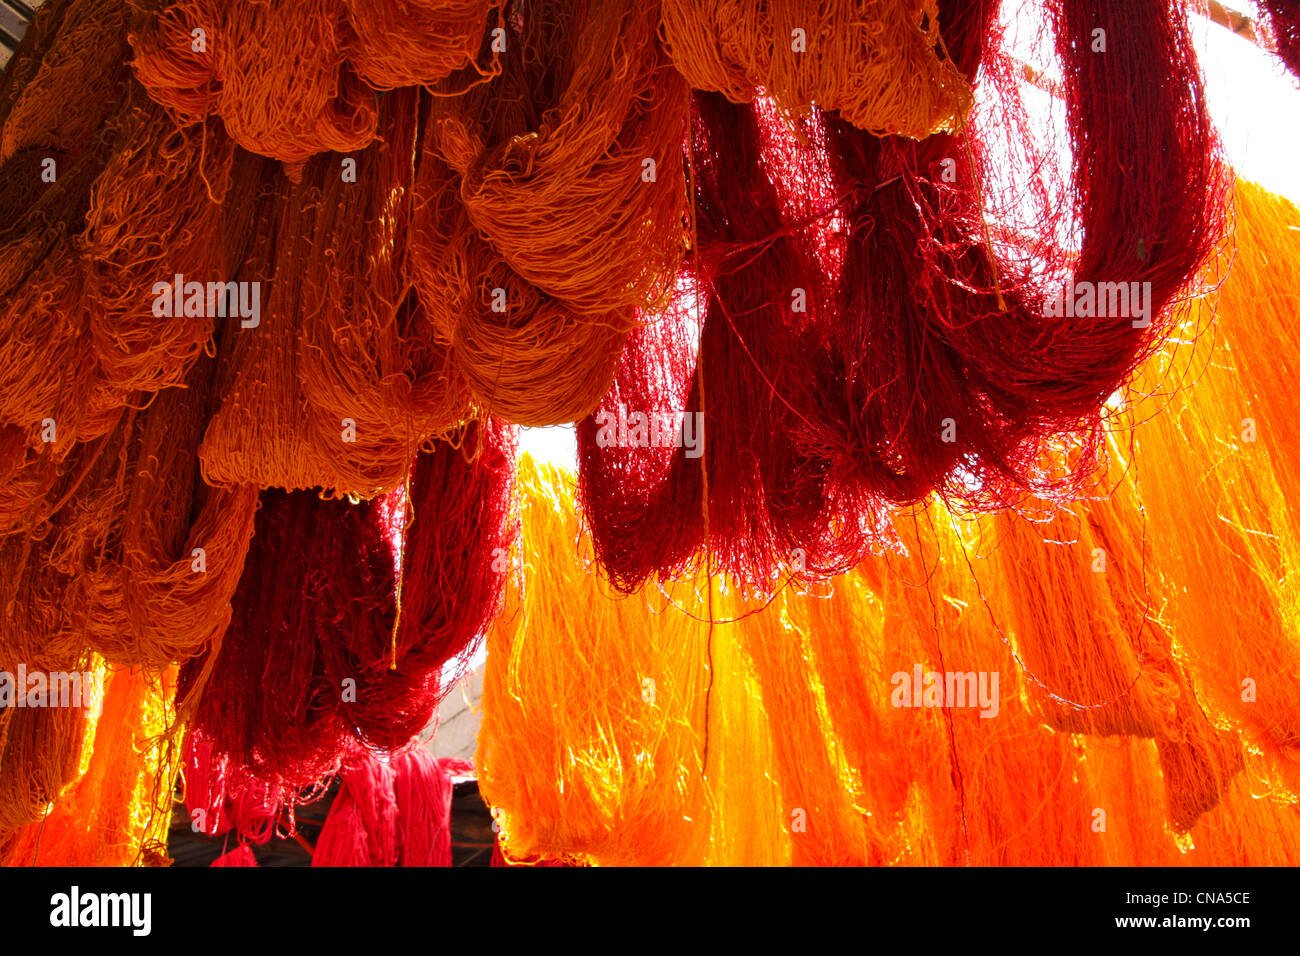 Des teintes en rouge et orange échevettes de laine accrocher le séchage au soleil, à la laine teinturiers souk dans la medina, Marrakech, Maroc Banque D'Images